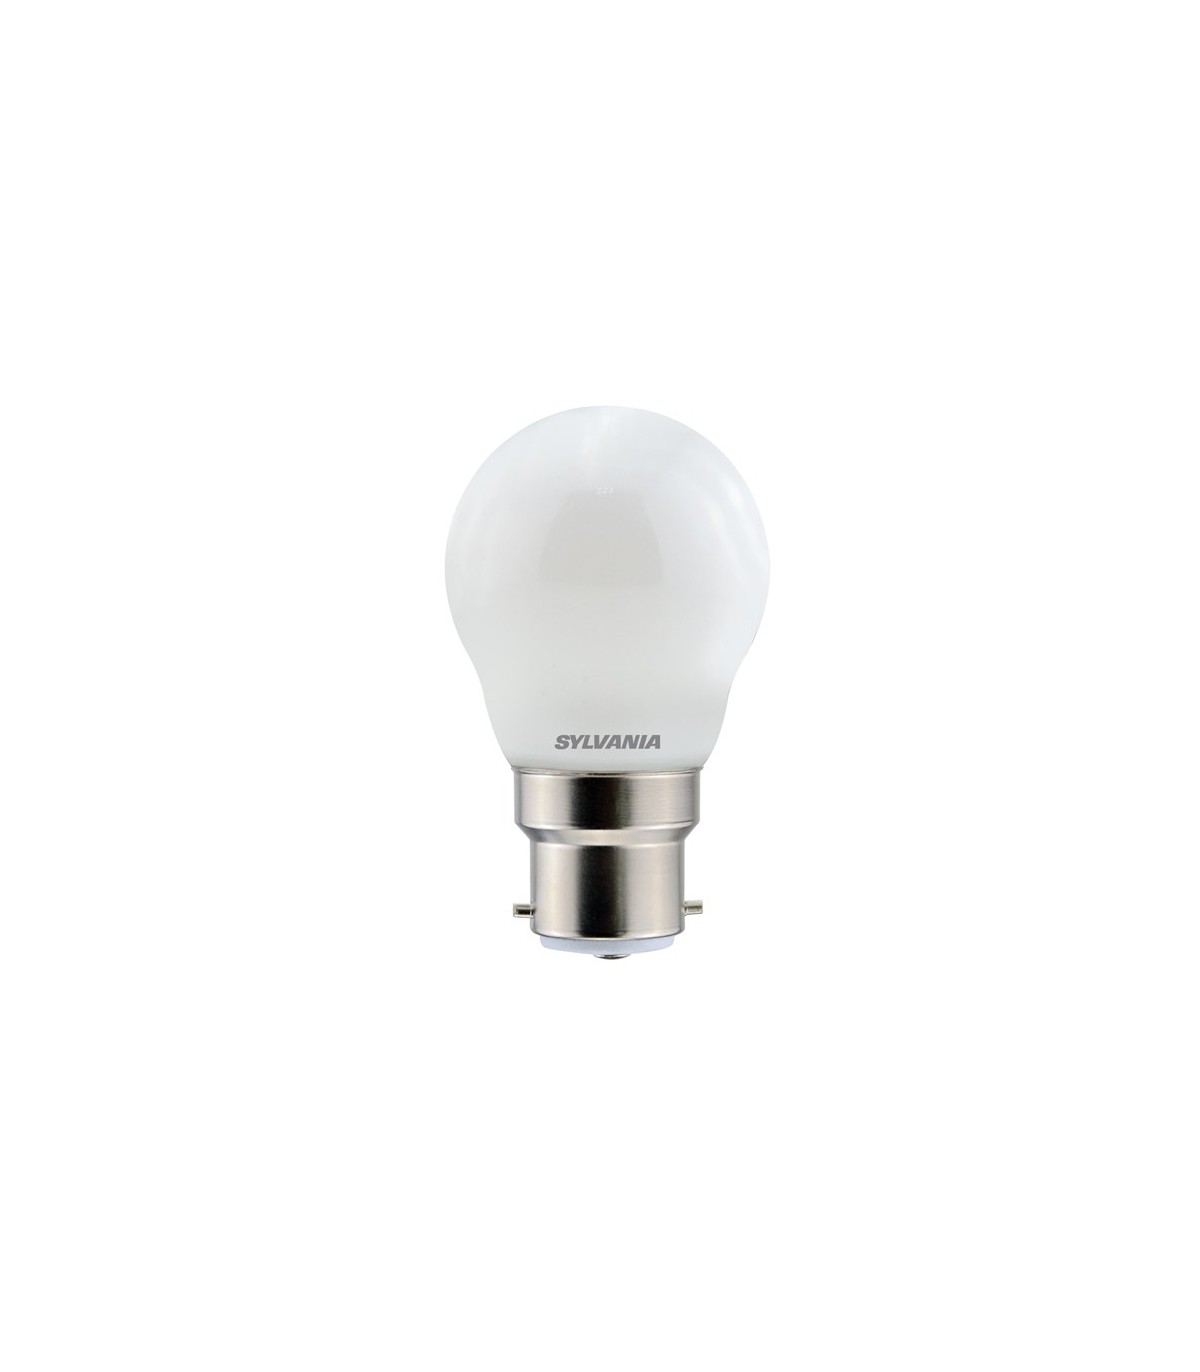 LED 25W Ampoule E27/B22 GLS Lampe Ampoule Blanc Froid Blanc Chaud